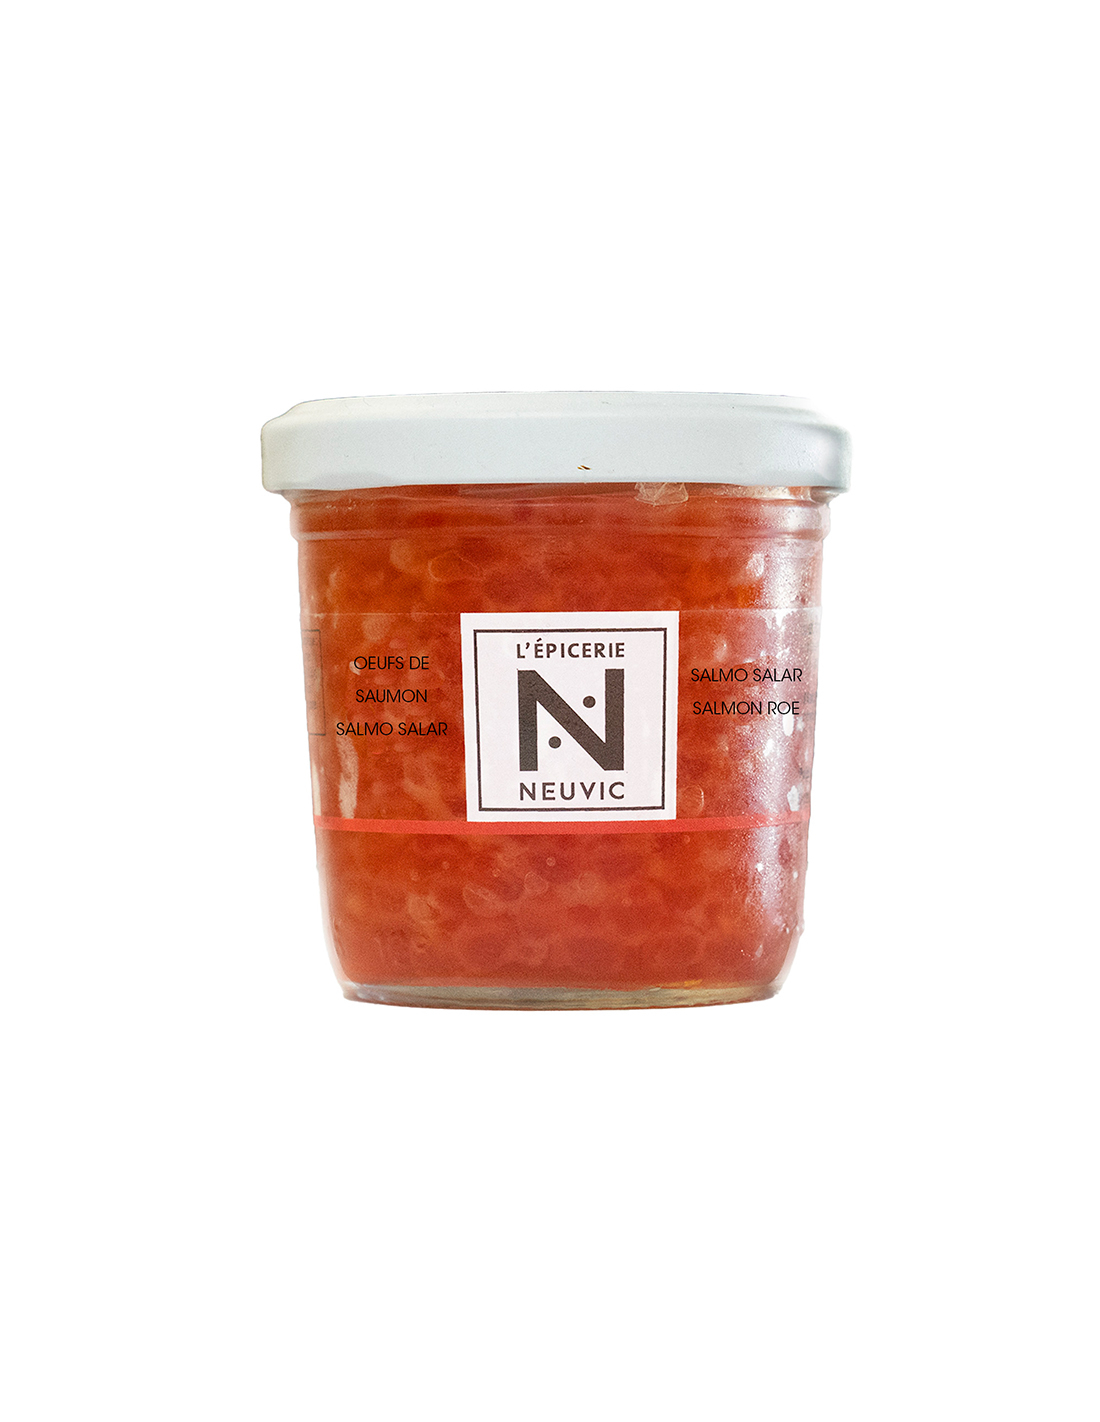 Oeufs de saumon Salmo Salar 100g - L'Épicerie Neuvic - Caviar de Neuvic